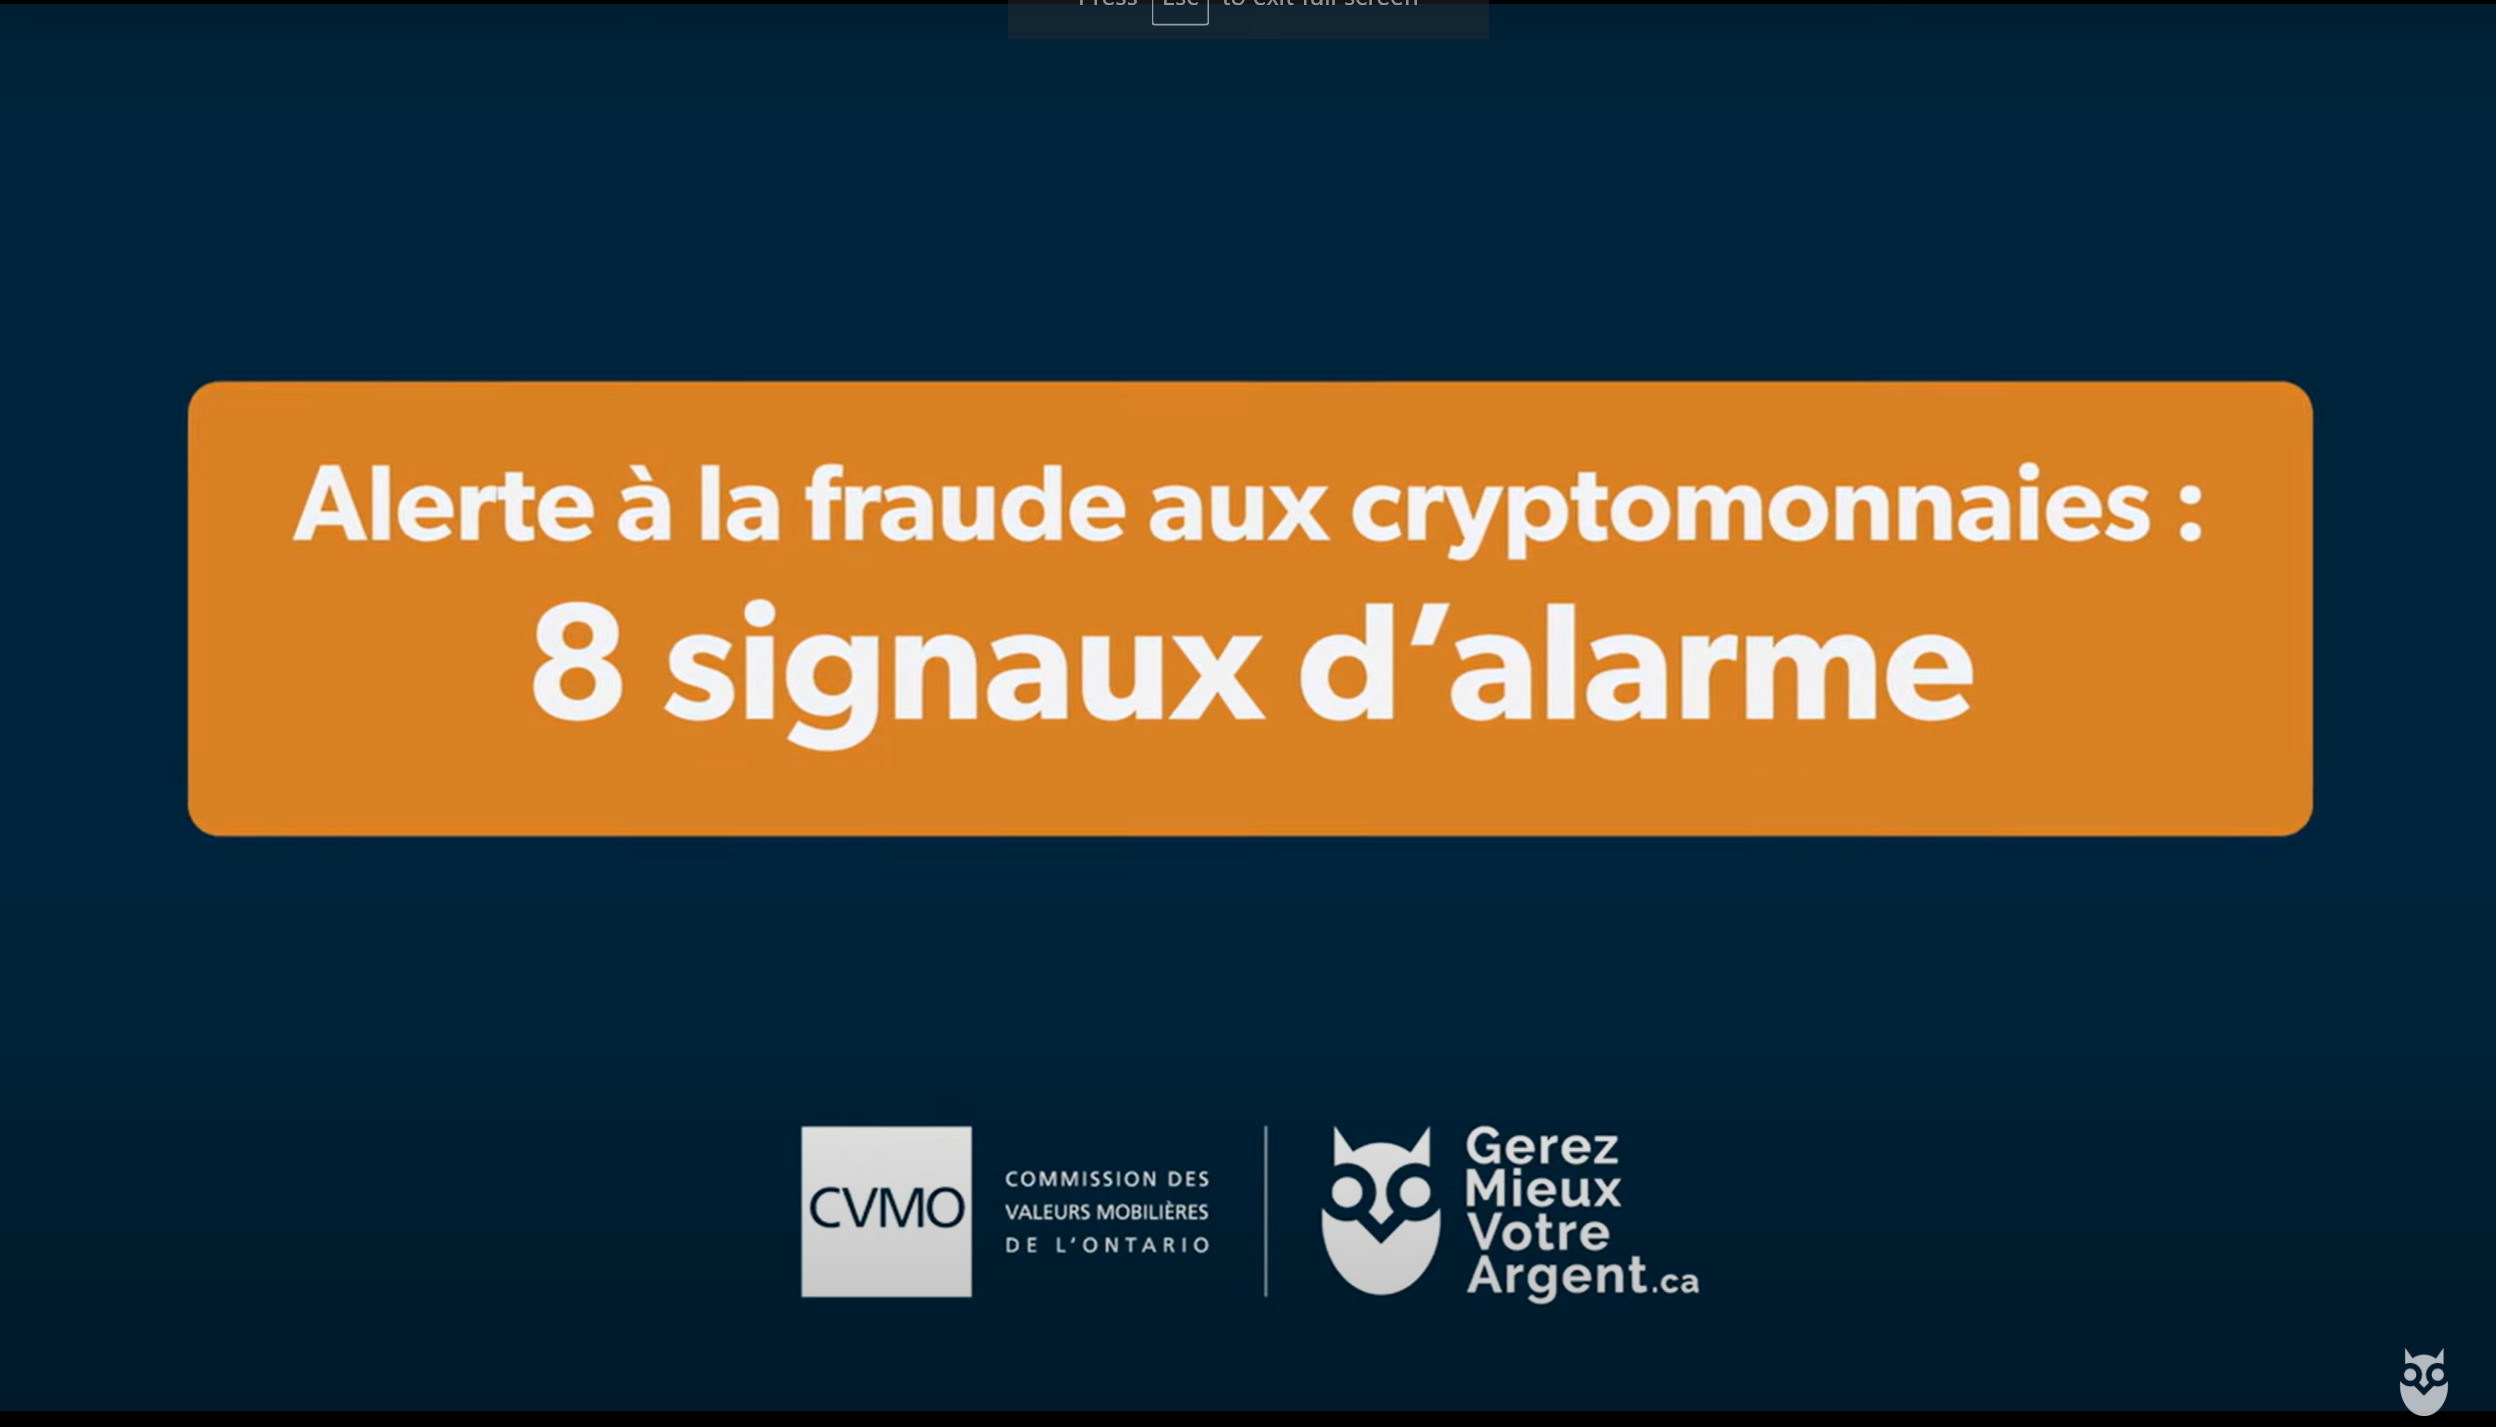 Alerte à la fraude aux cryptomonnaies: 8 signaux d’alarme